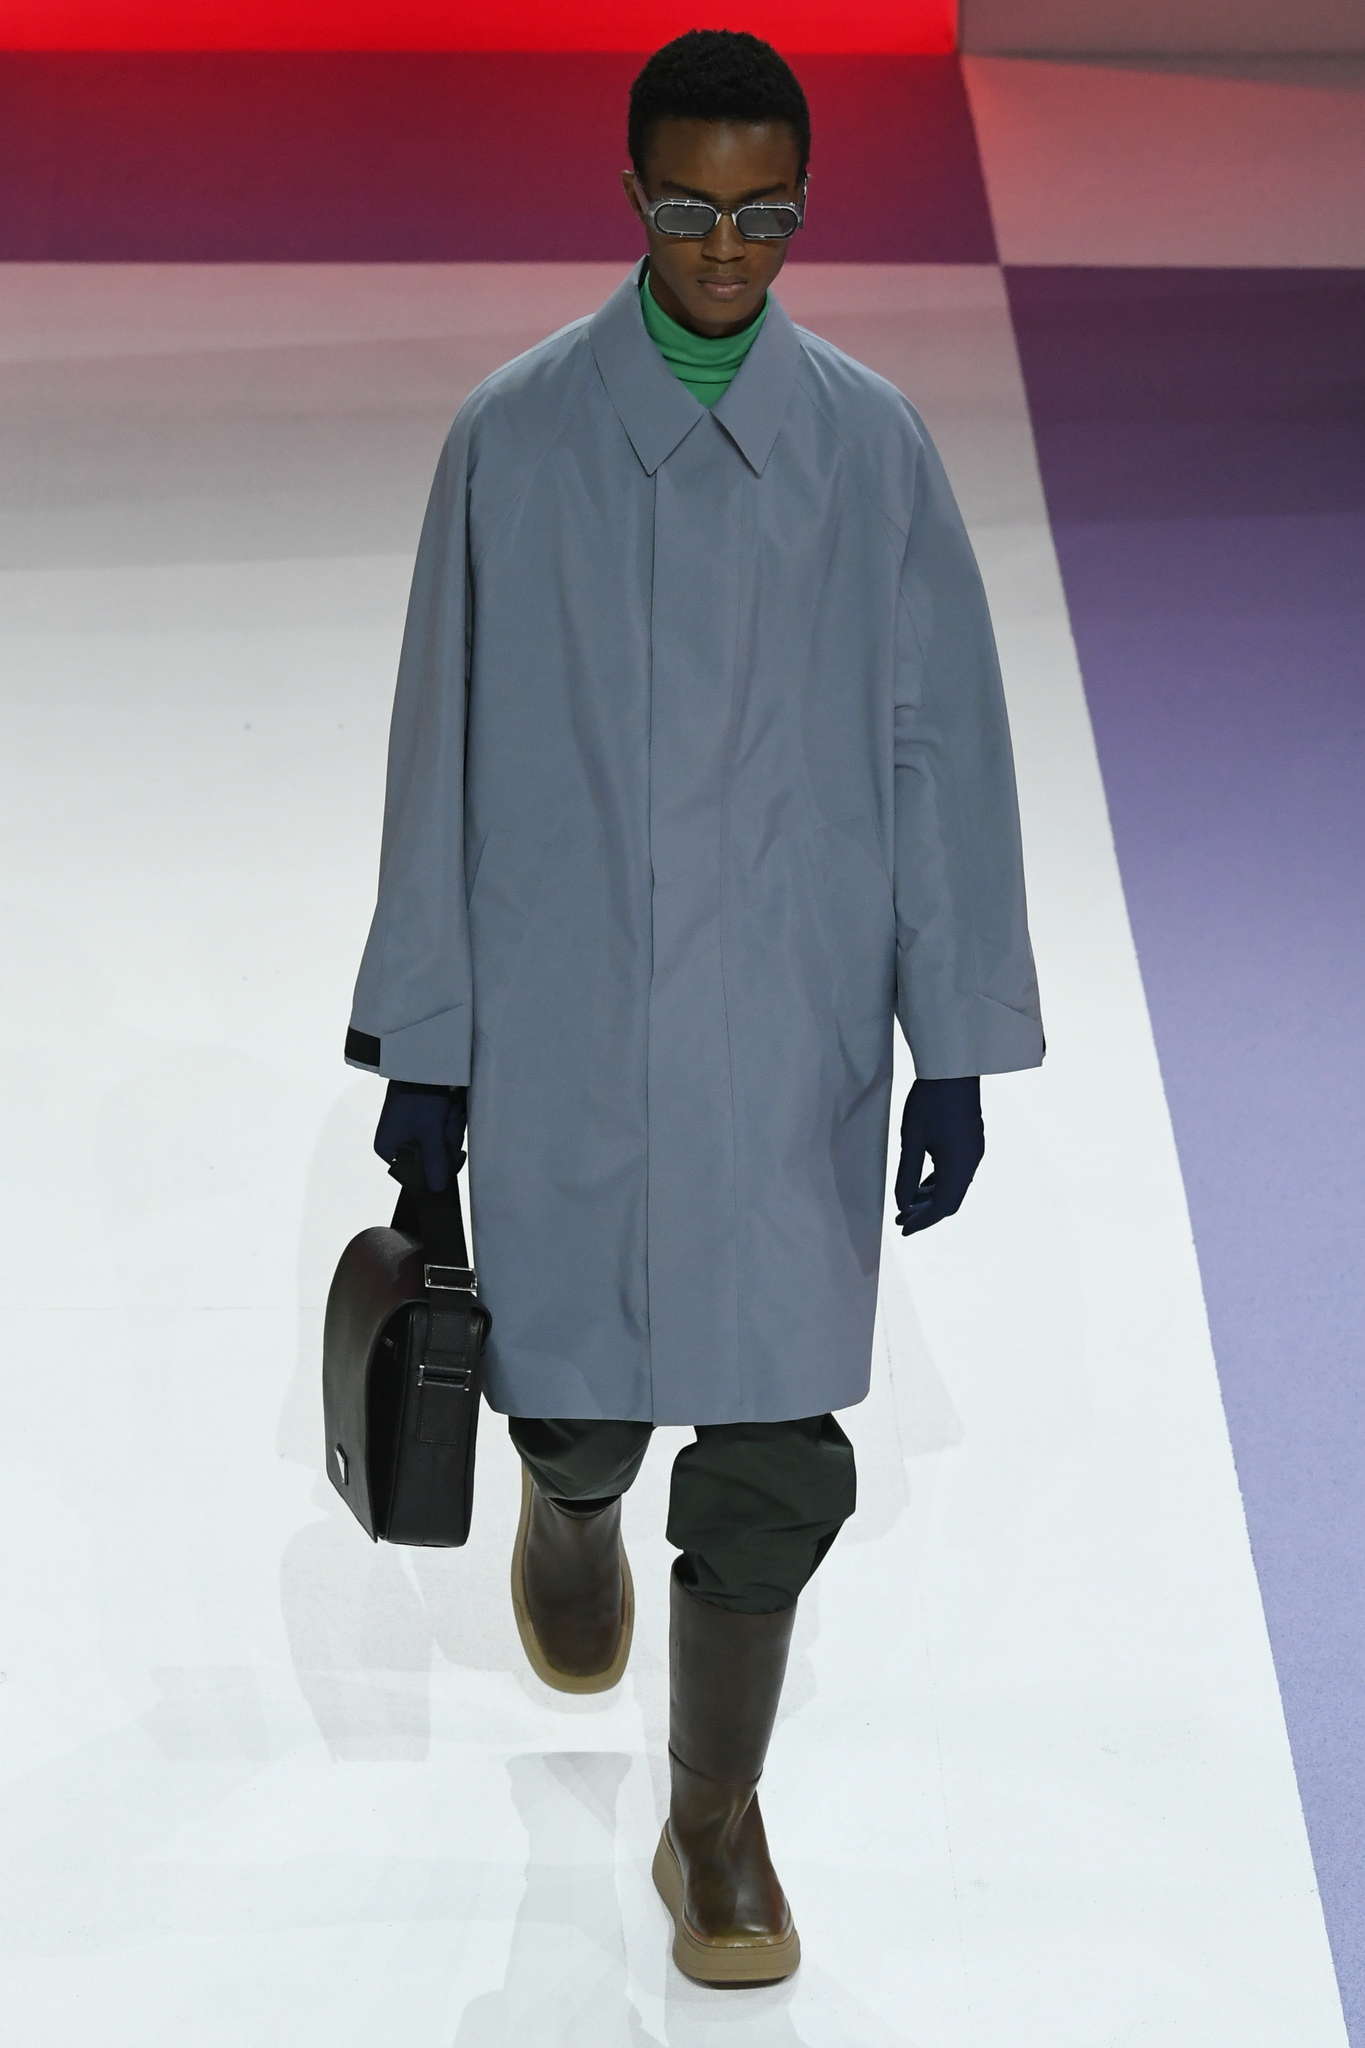 Noir Pluie Imperméable STORM Combinaison Overalls homme femmes manteau One piece Suit